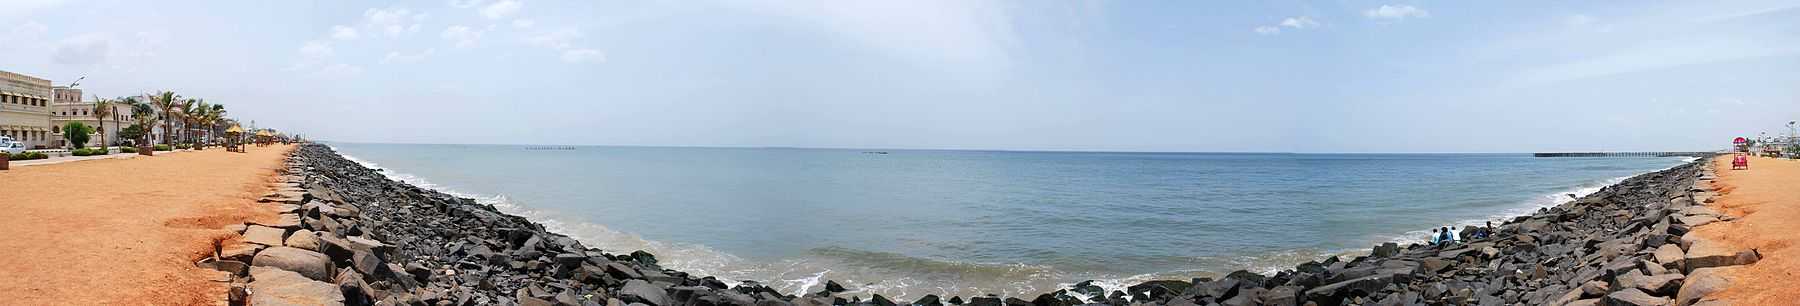 Panorama view of Pondicherry beach